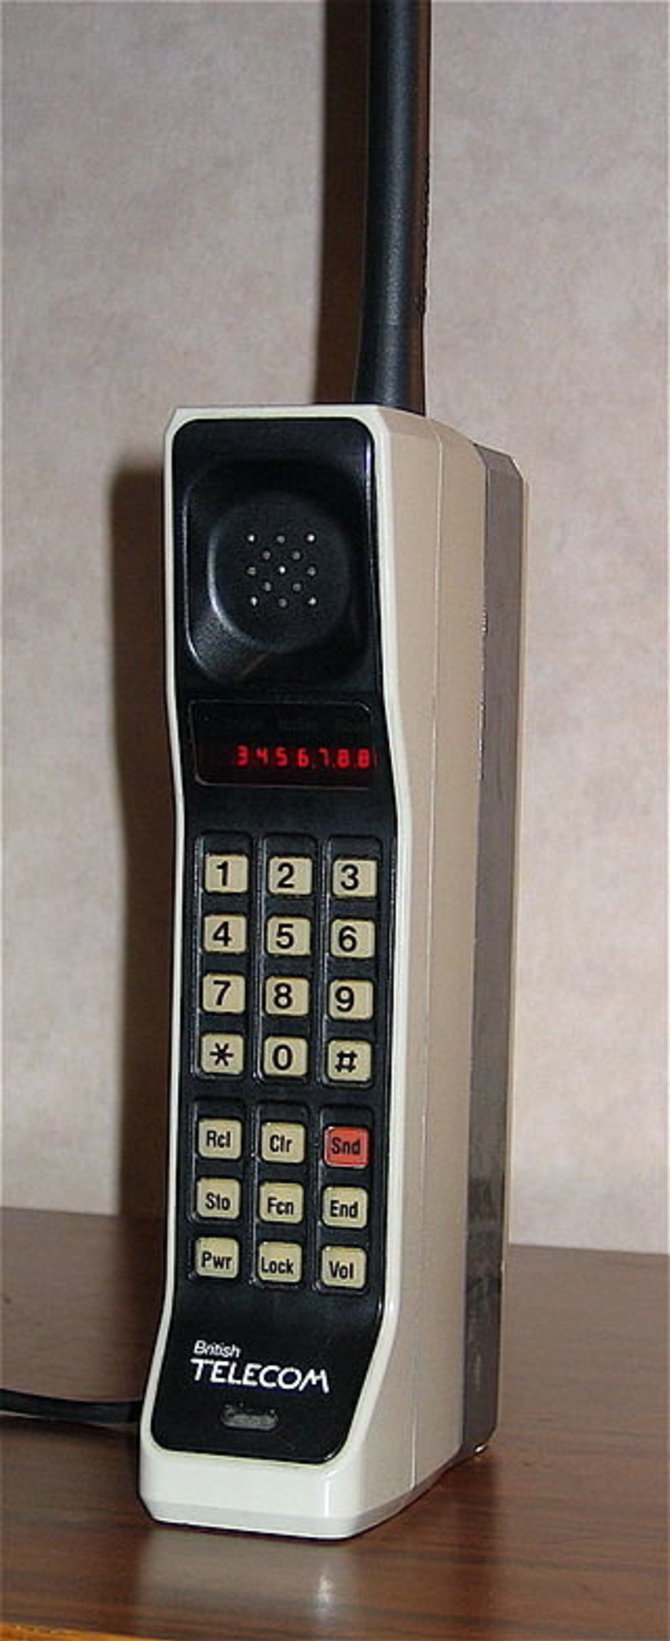 Tele2/1G Motorola DynaTAC 8000X Pirmasis mobilusis telefonas